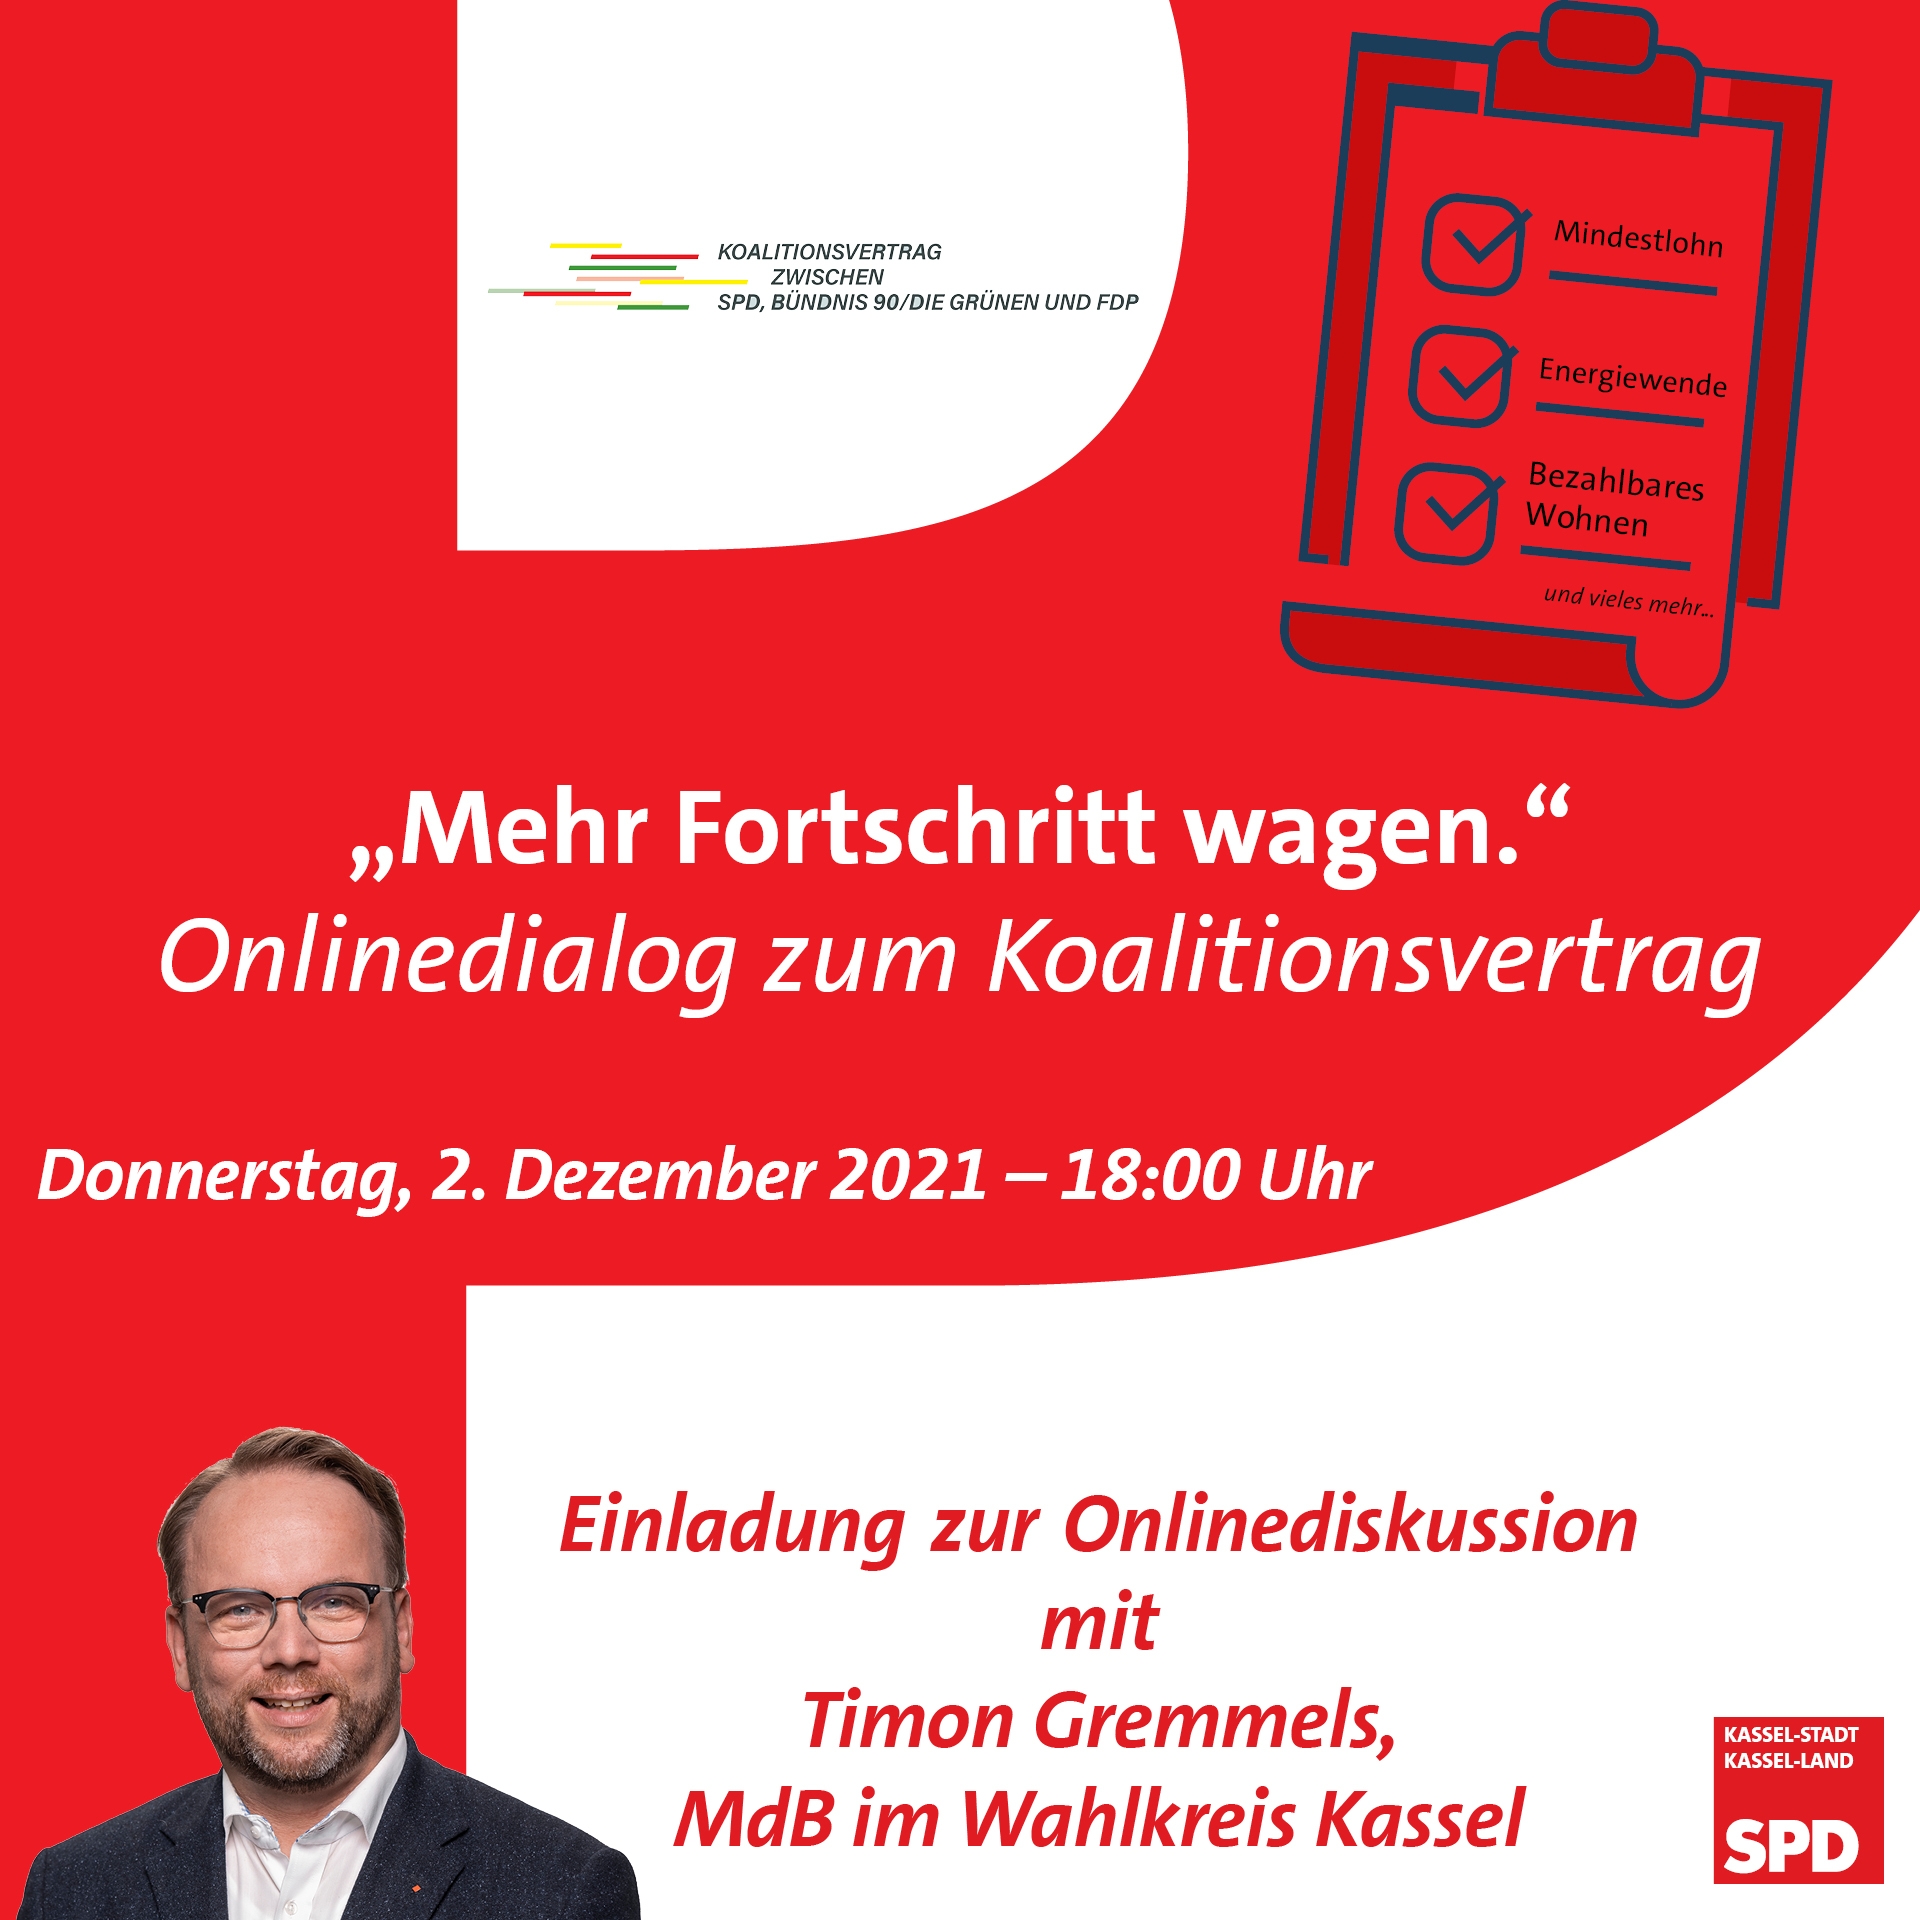 Einladung zur Onlinekonferenz zum Koalitionsvertrag zwischen SPD, Grüne und FDP